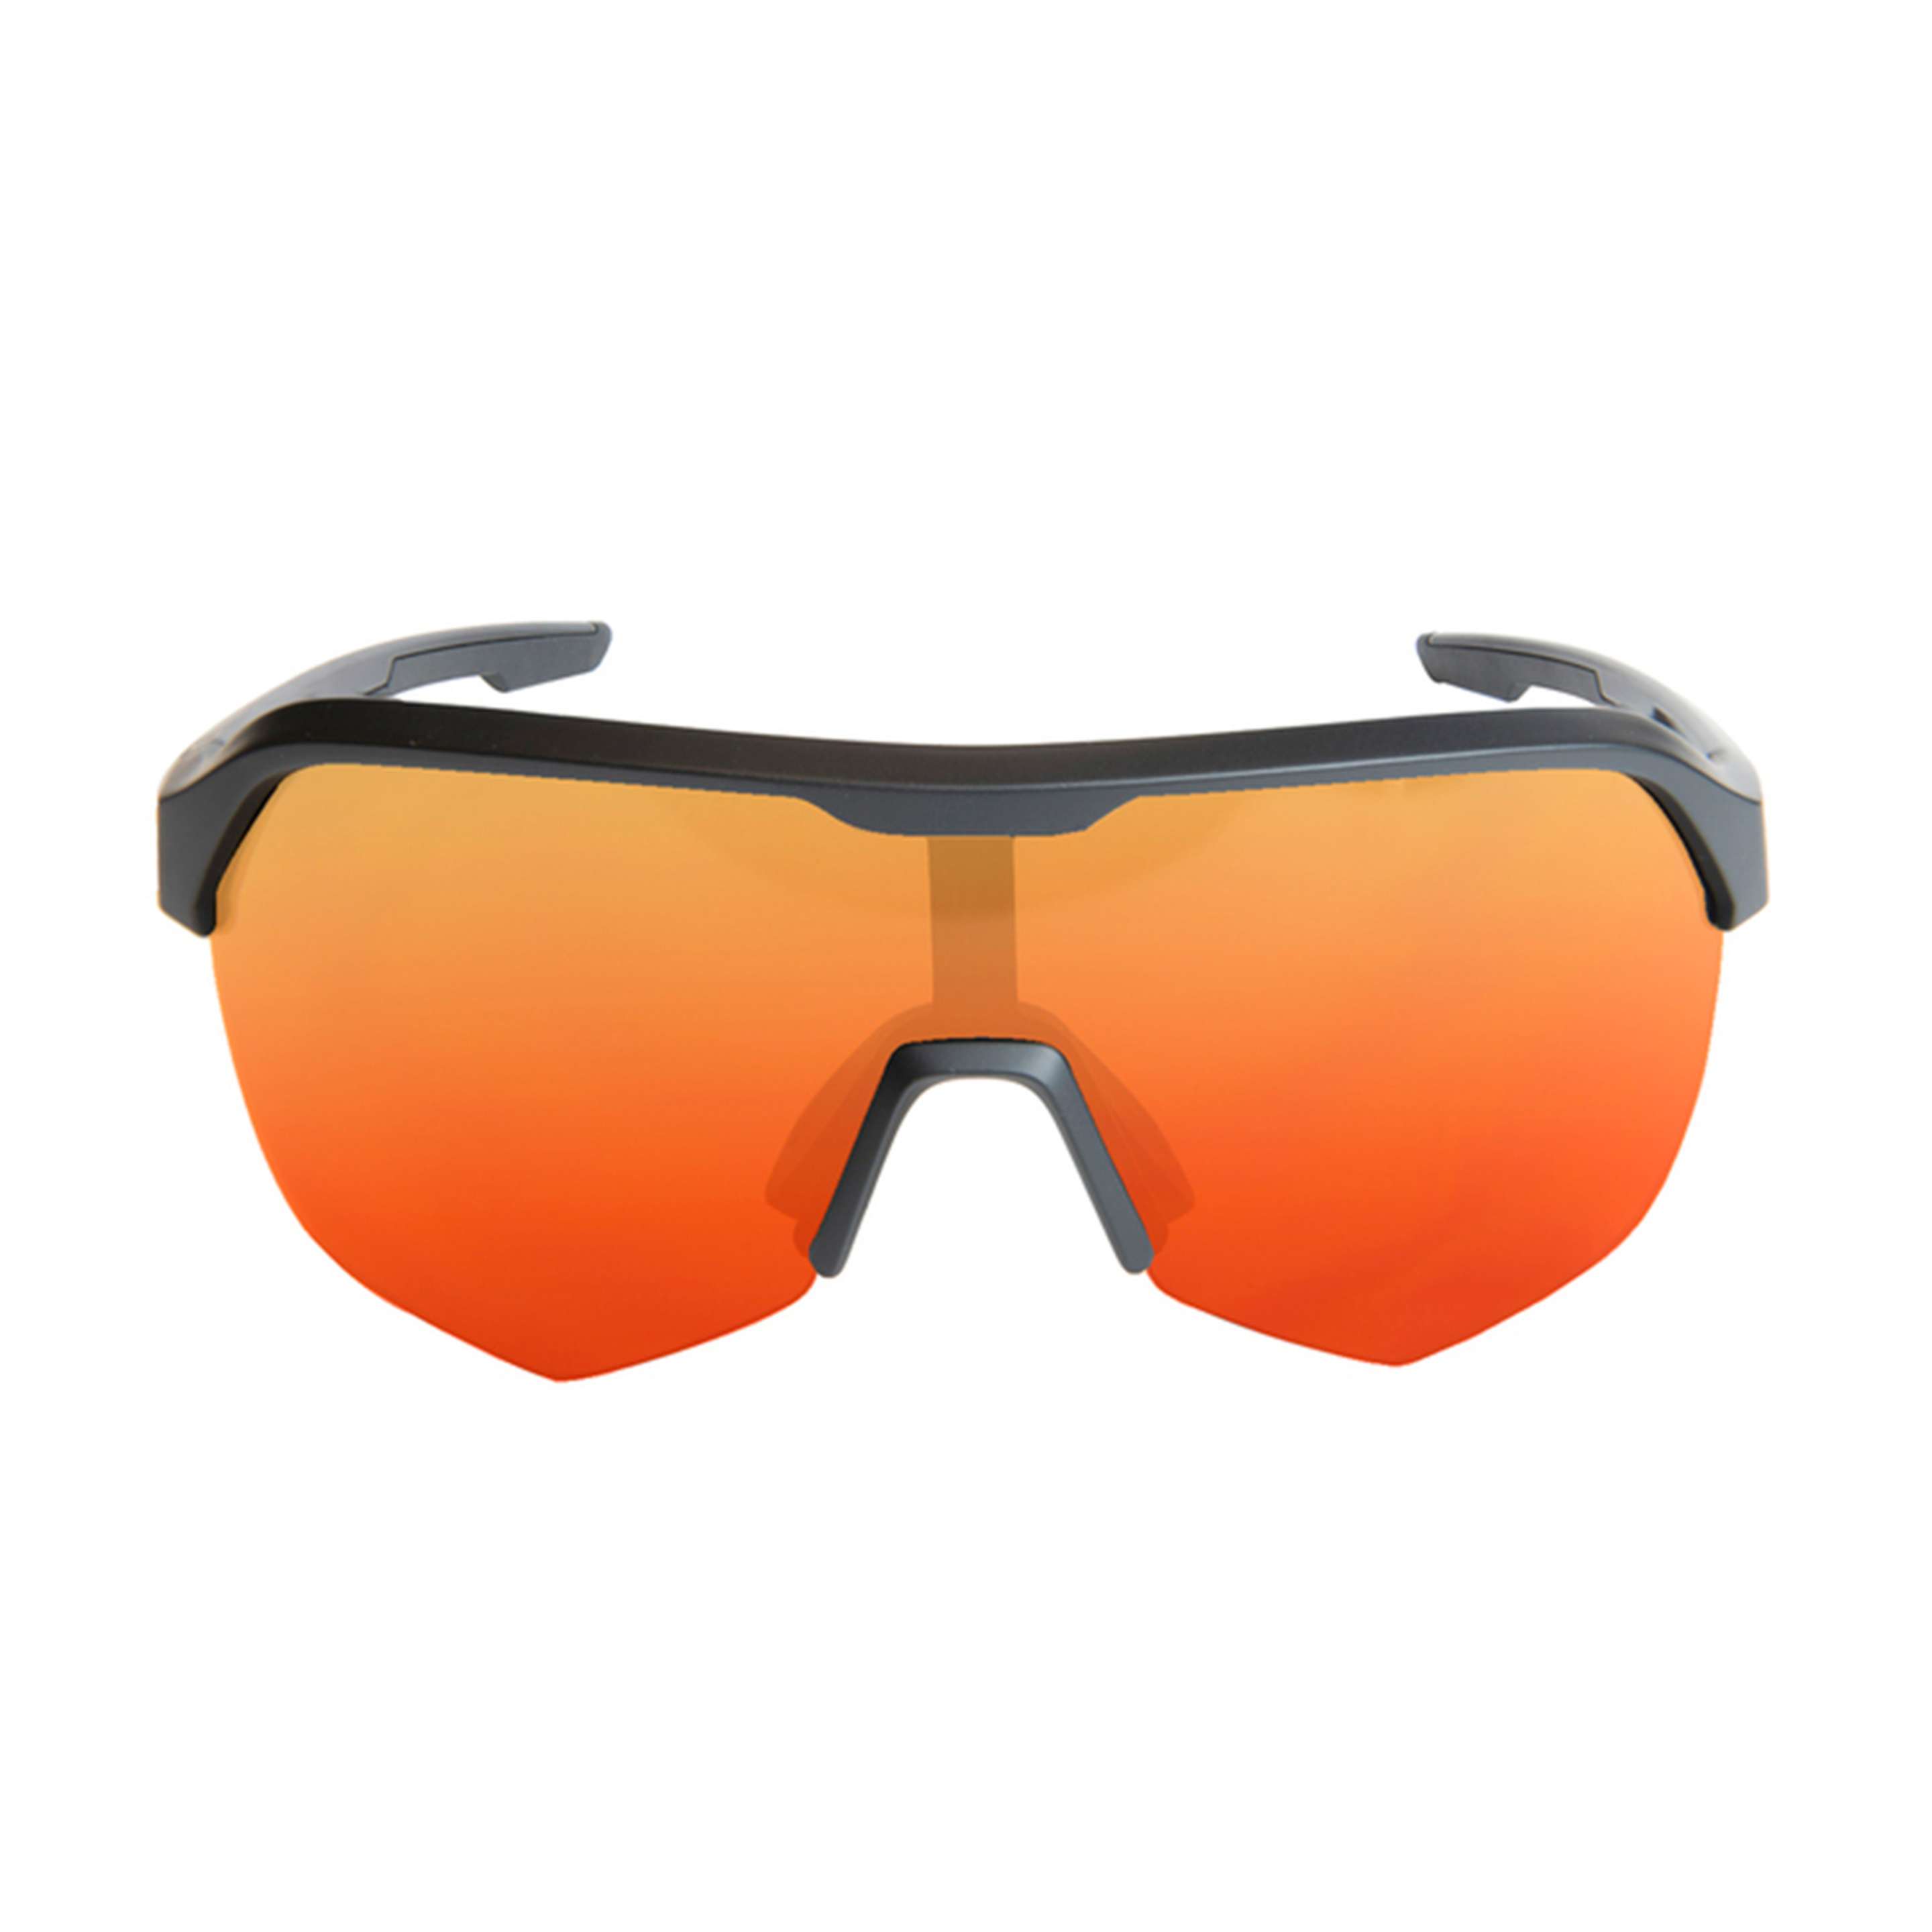 Óculos De Sol Para Ciclismo Ecoon Val Thorens - Vermelho - Produto ECO Reciclado e Reciclável | Sport Zone MKP